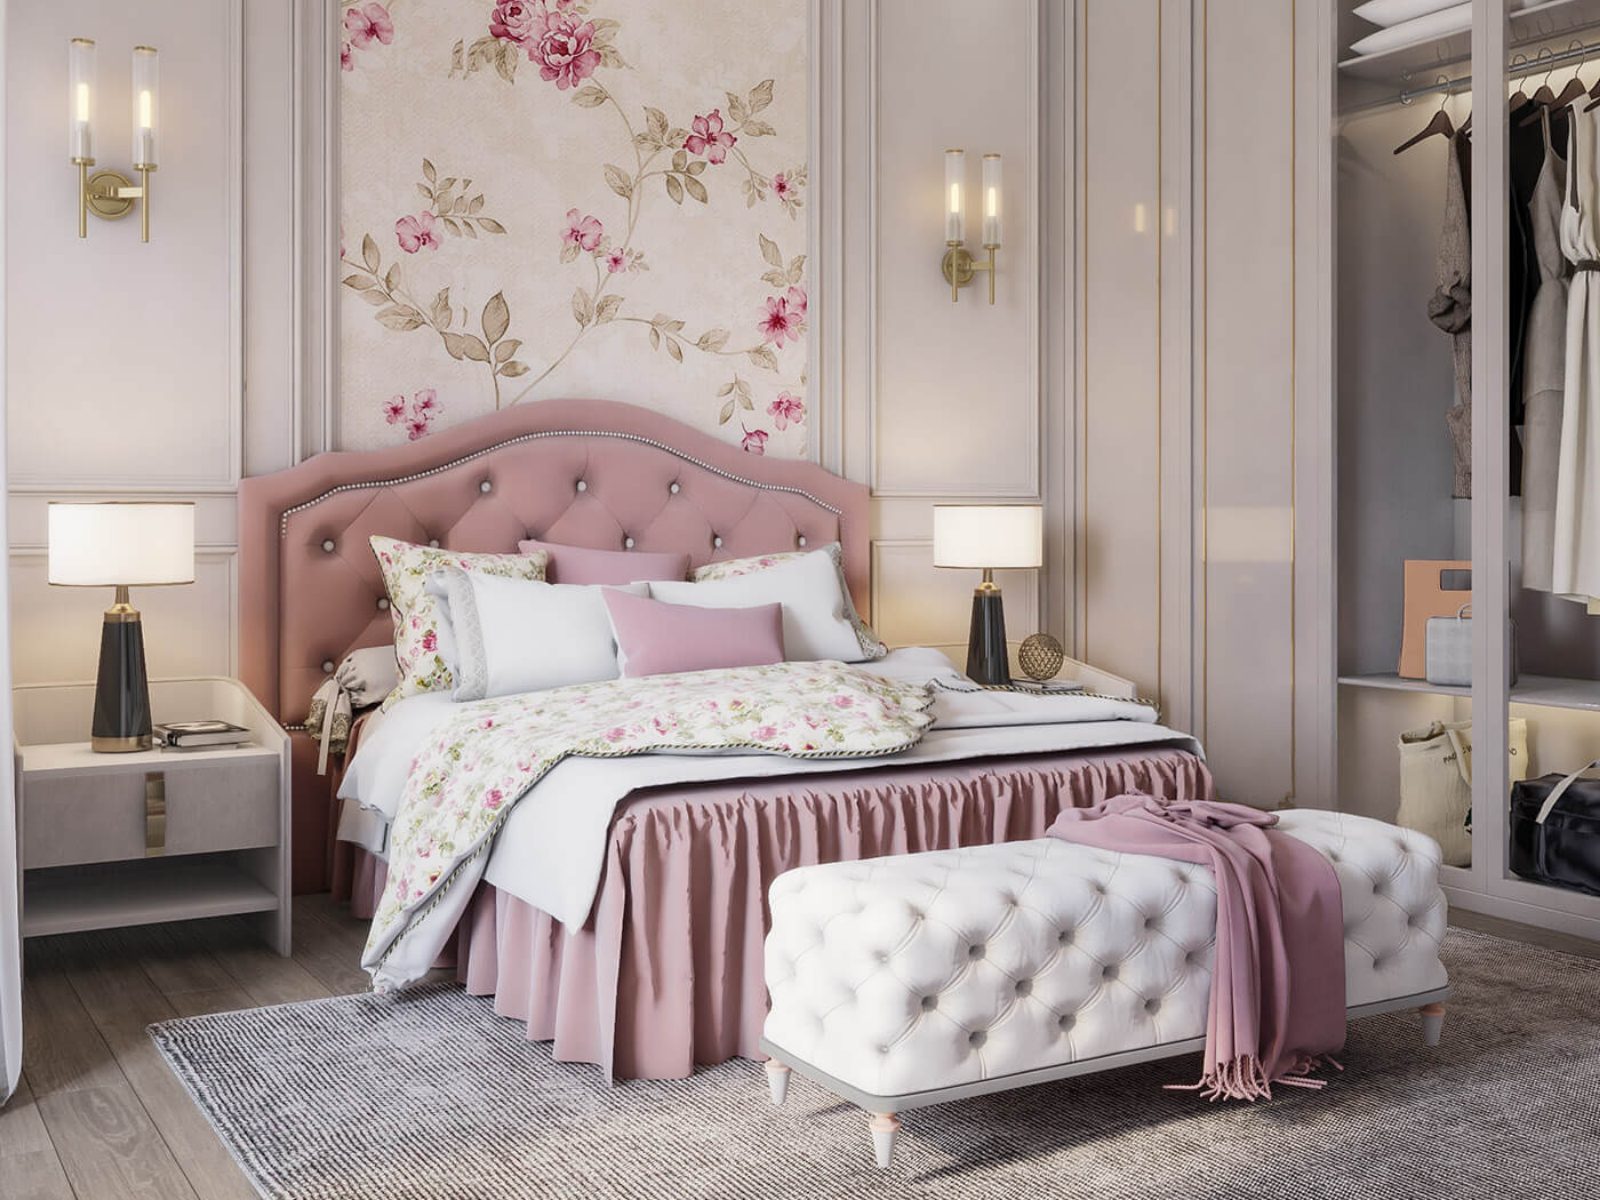 Phòng ngủ màu hồng phong cách tân cổ điển sang trọng